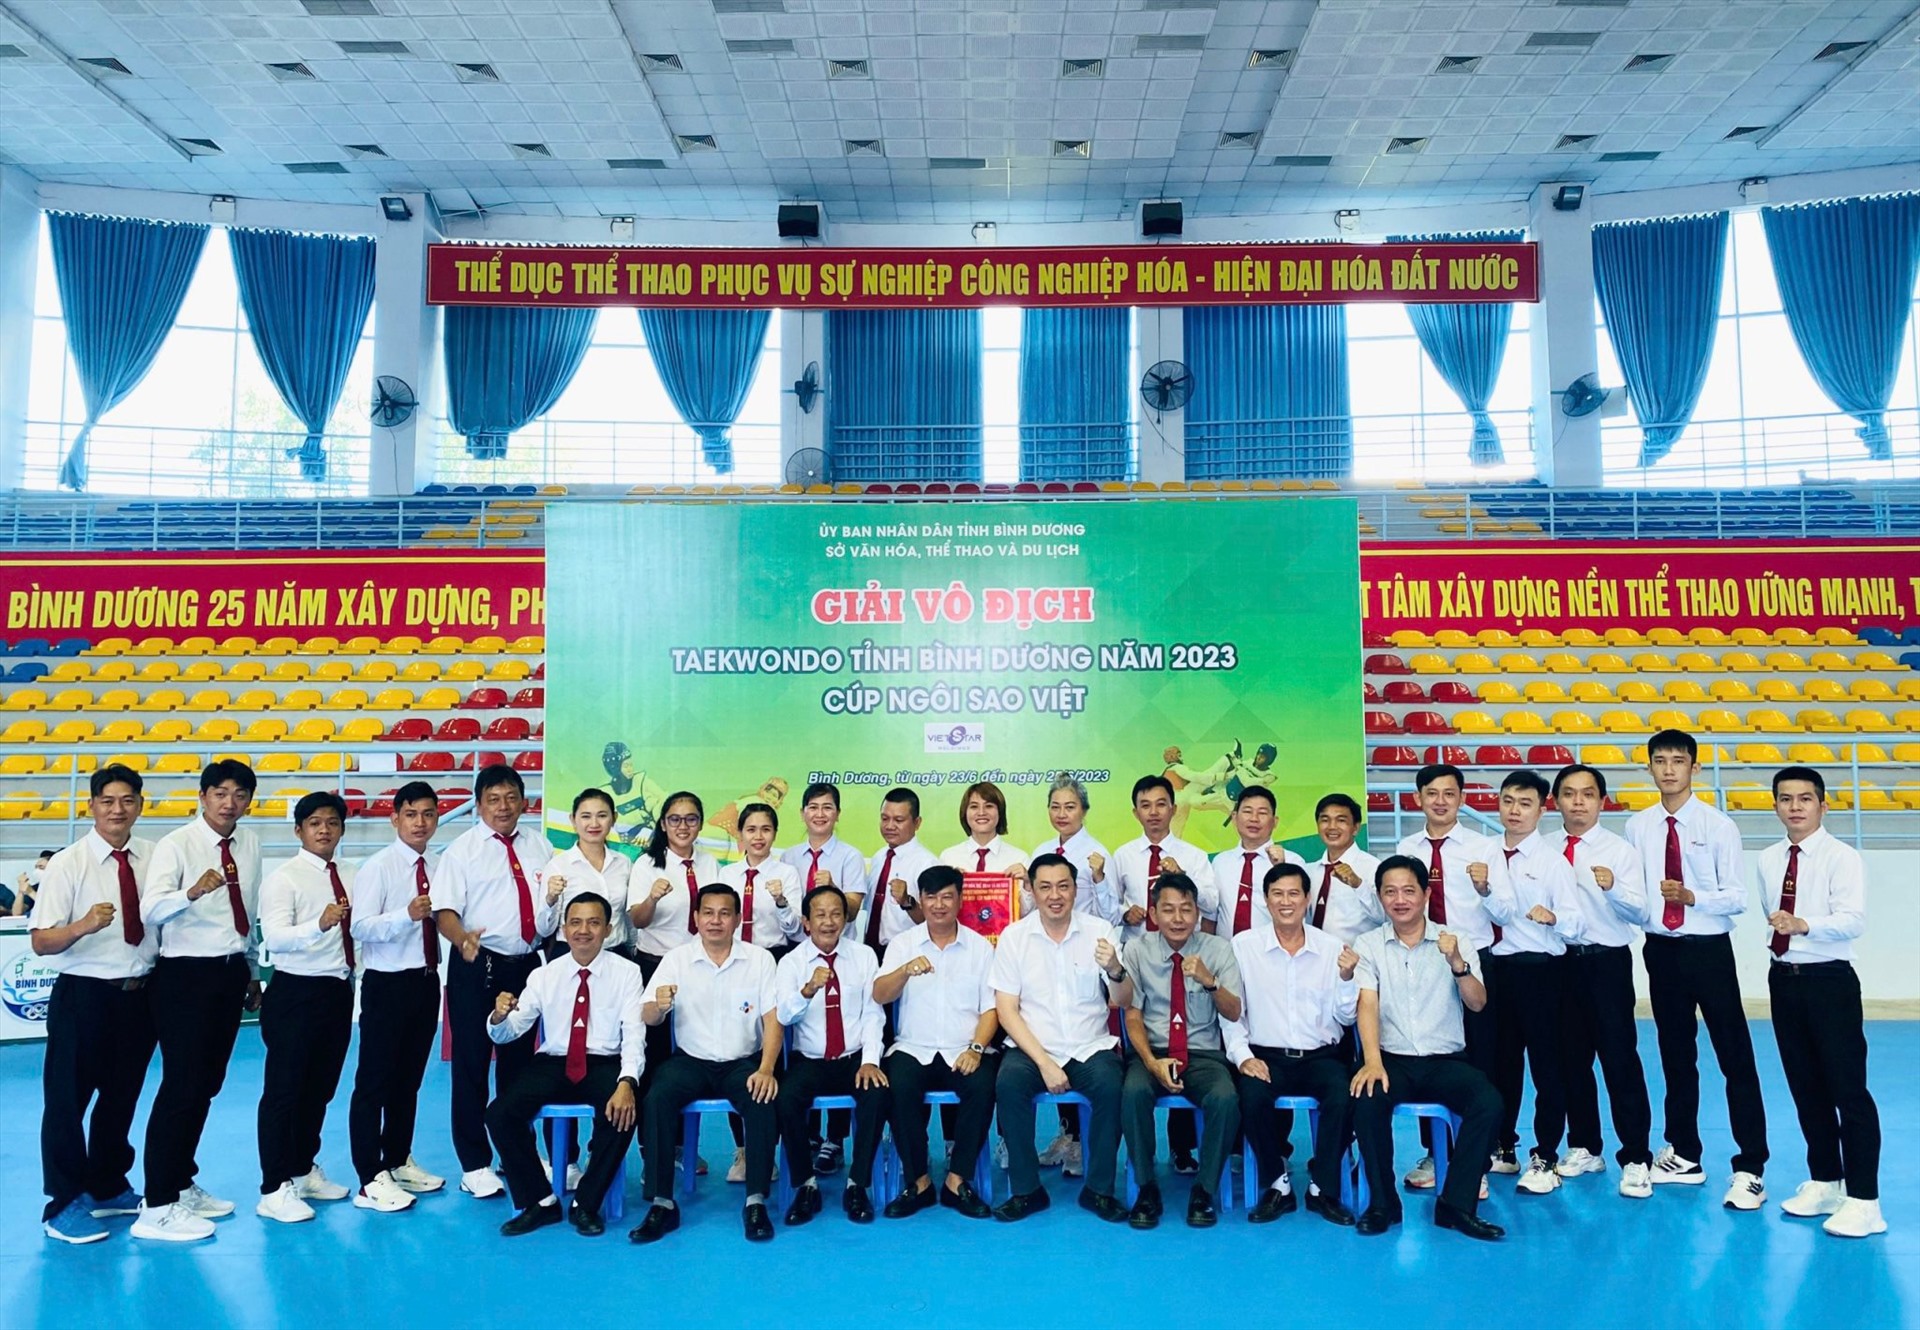 Các trọng tài làm nhiệm vụ tại giải vô địch taekwondo tỉnh Bình Dương 2023. Ảnh: Sở VHTTDL Bình Dương